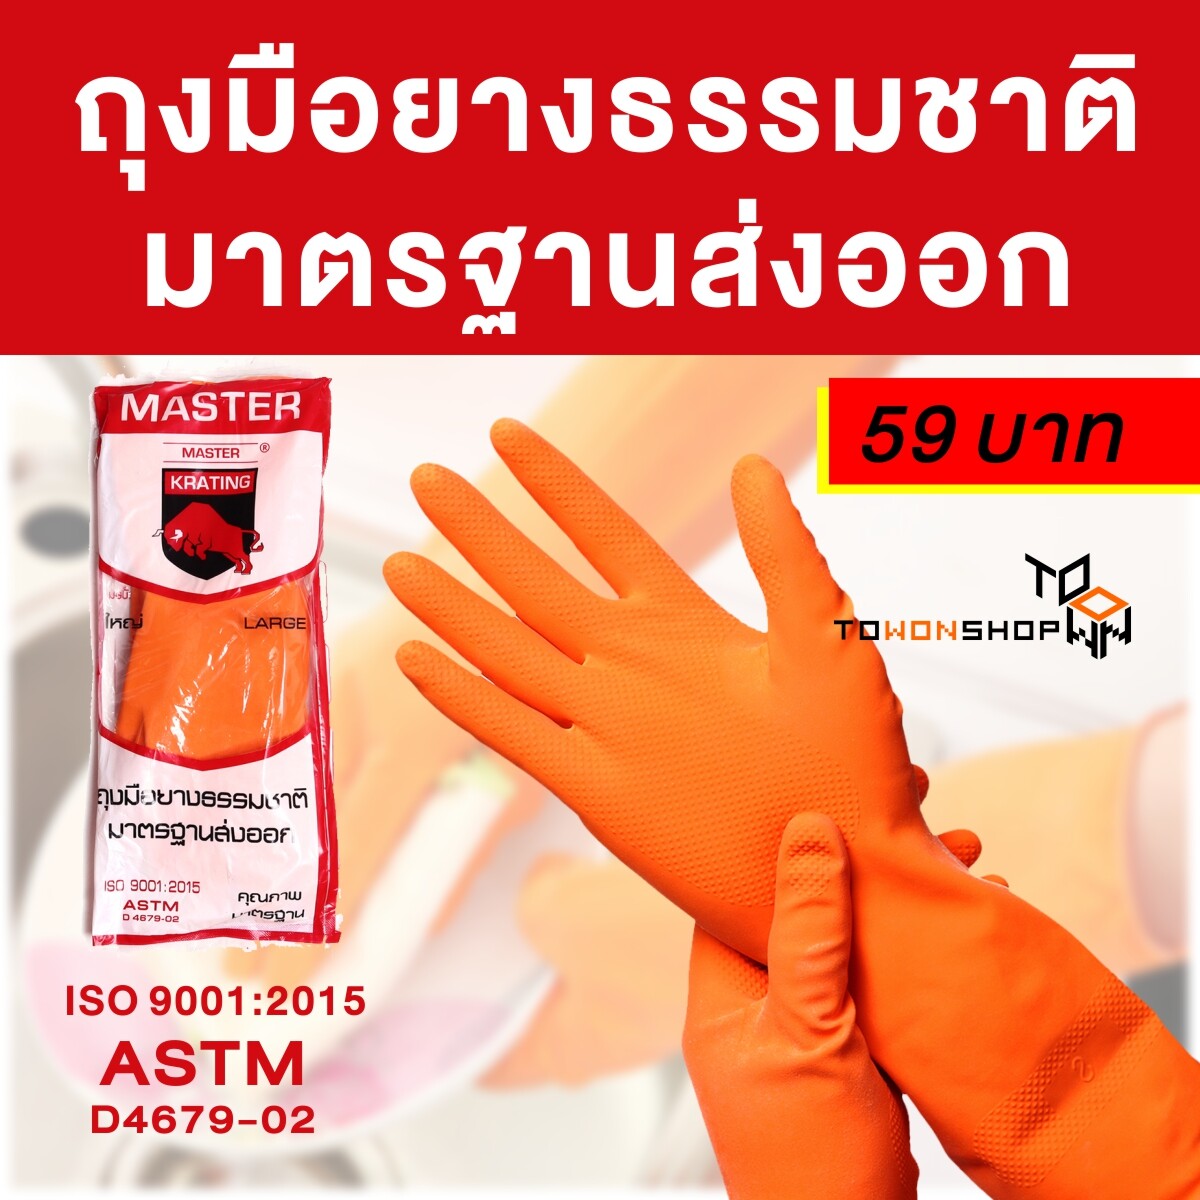 ถุงมือยาง ถุงมือยางแม่บ้าน MASTER Natural Latex Rubber Household Gloves สีส้ม  สี SIZE L ขนาดใหญ่ x 6 คู่